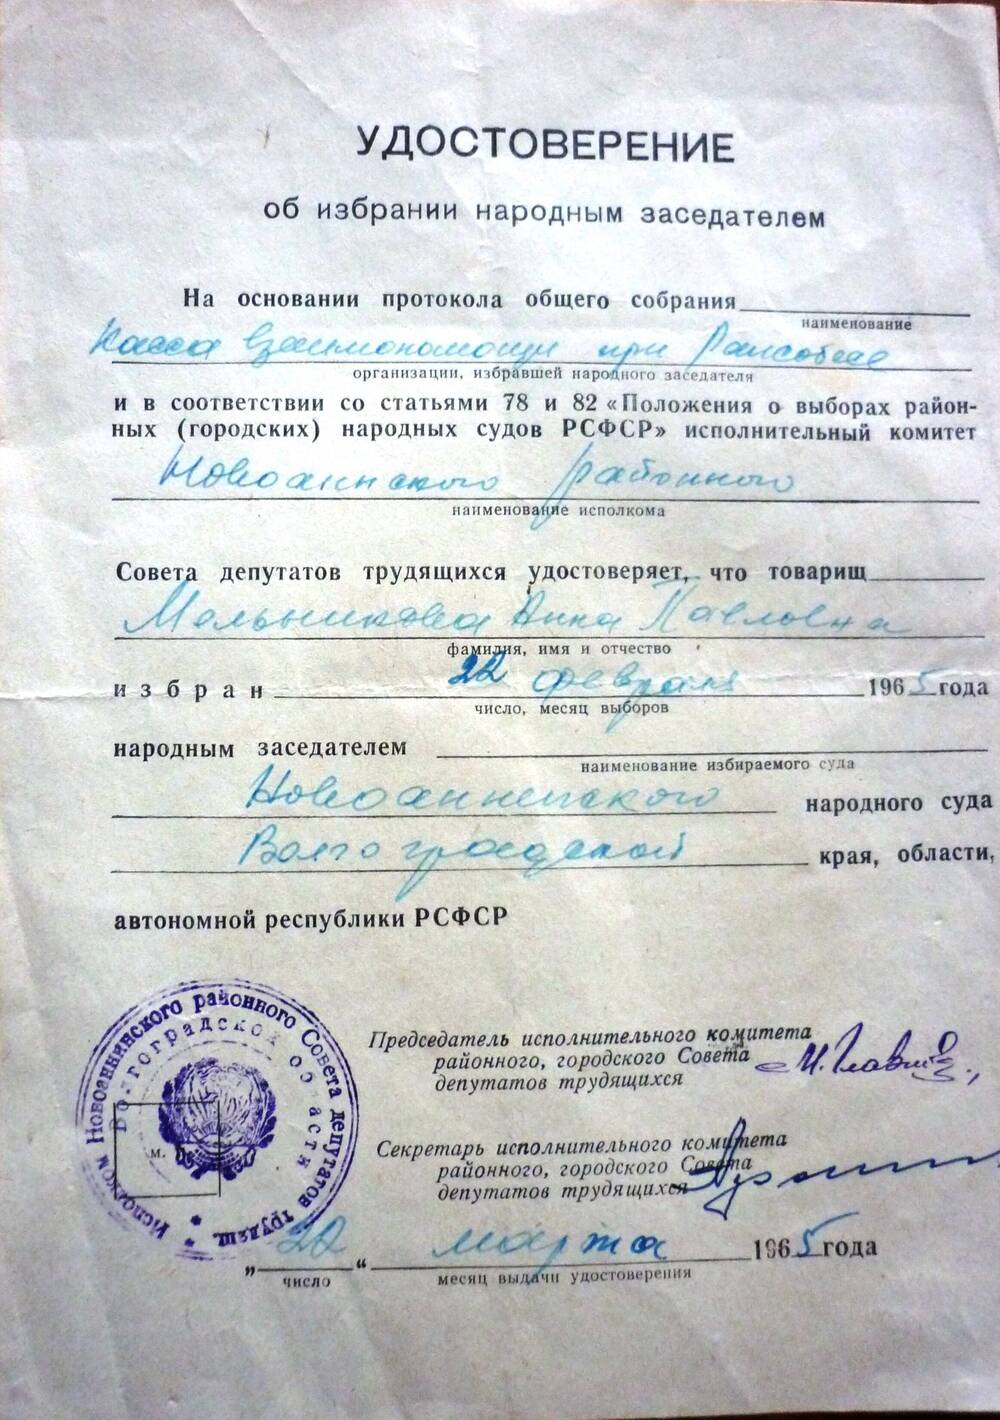 Удостоверение об избрании народным заседателем  Мельниковой Анны Павловны.   Дата выдачи -22 марта 1965г.